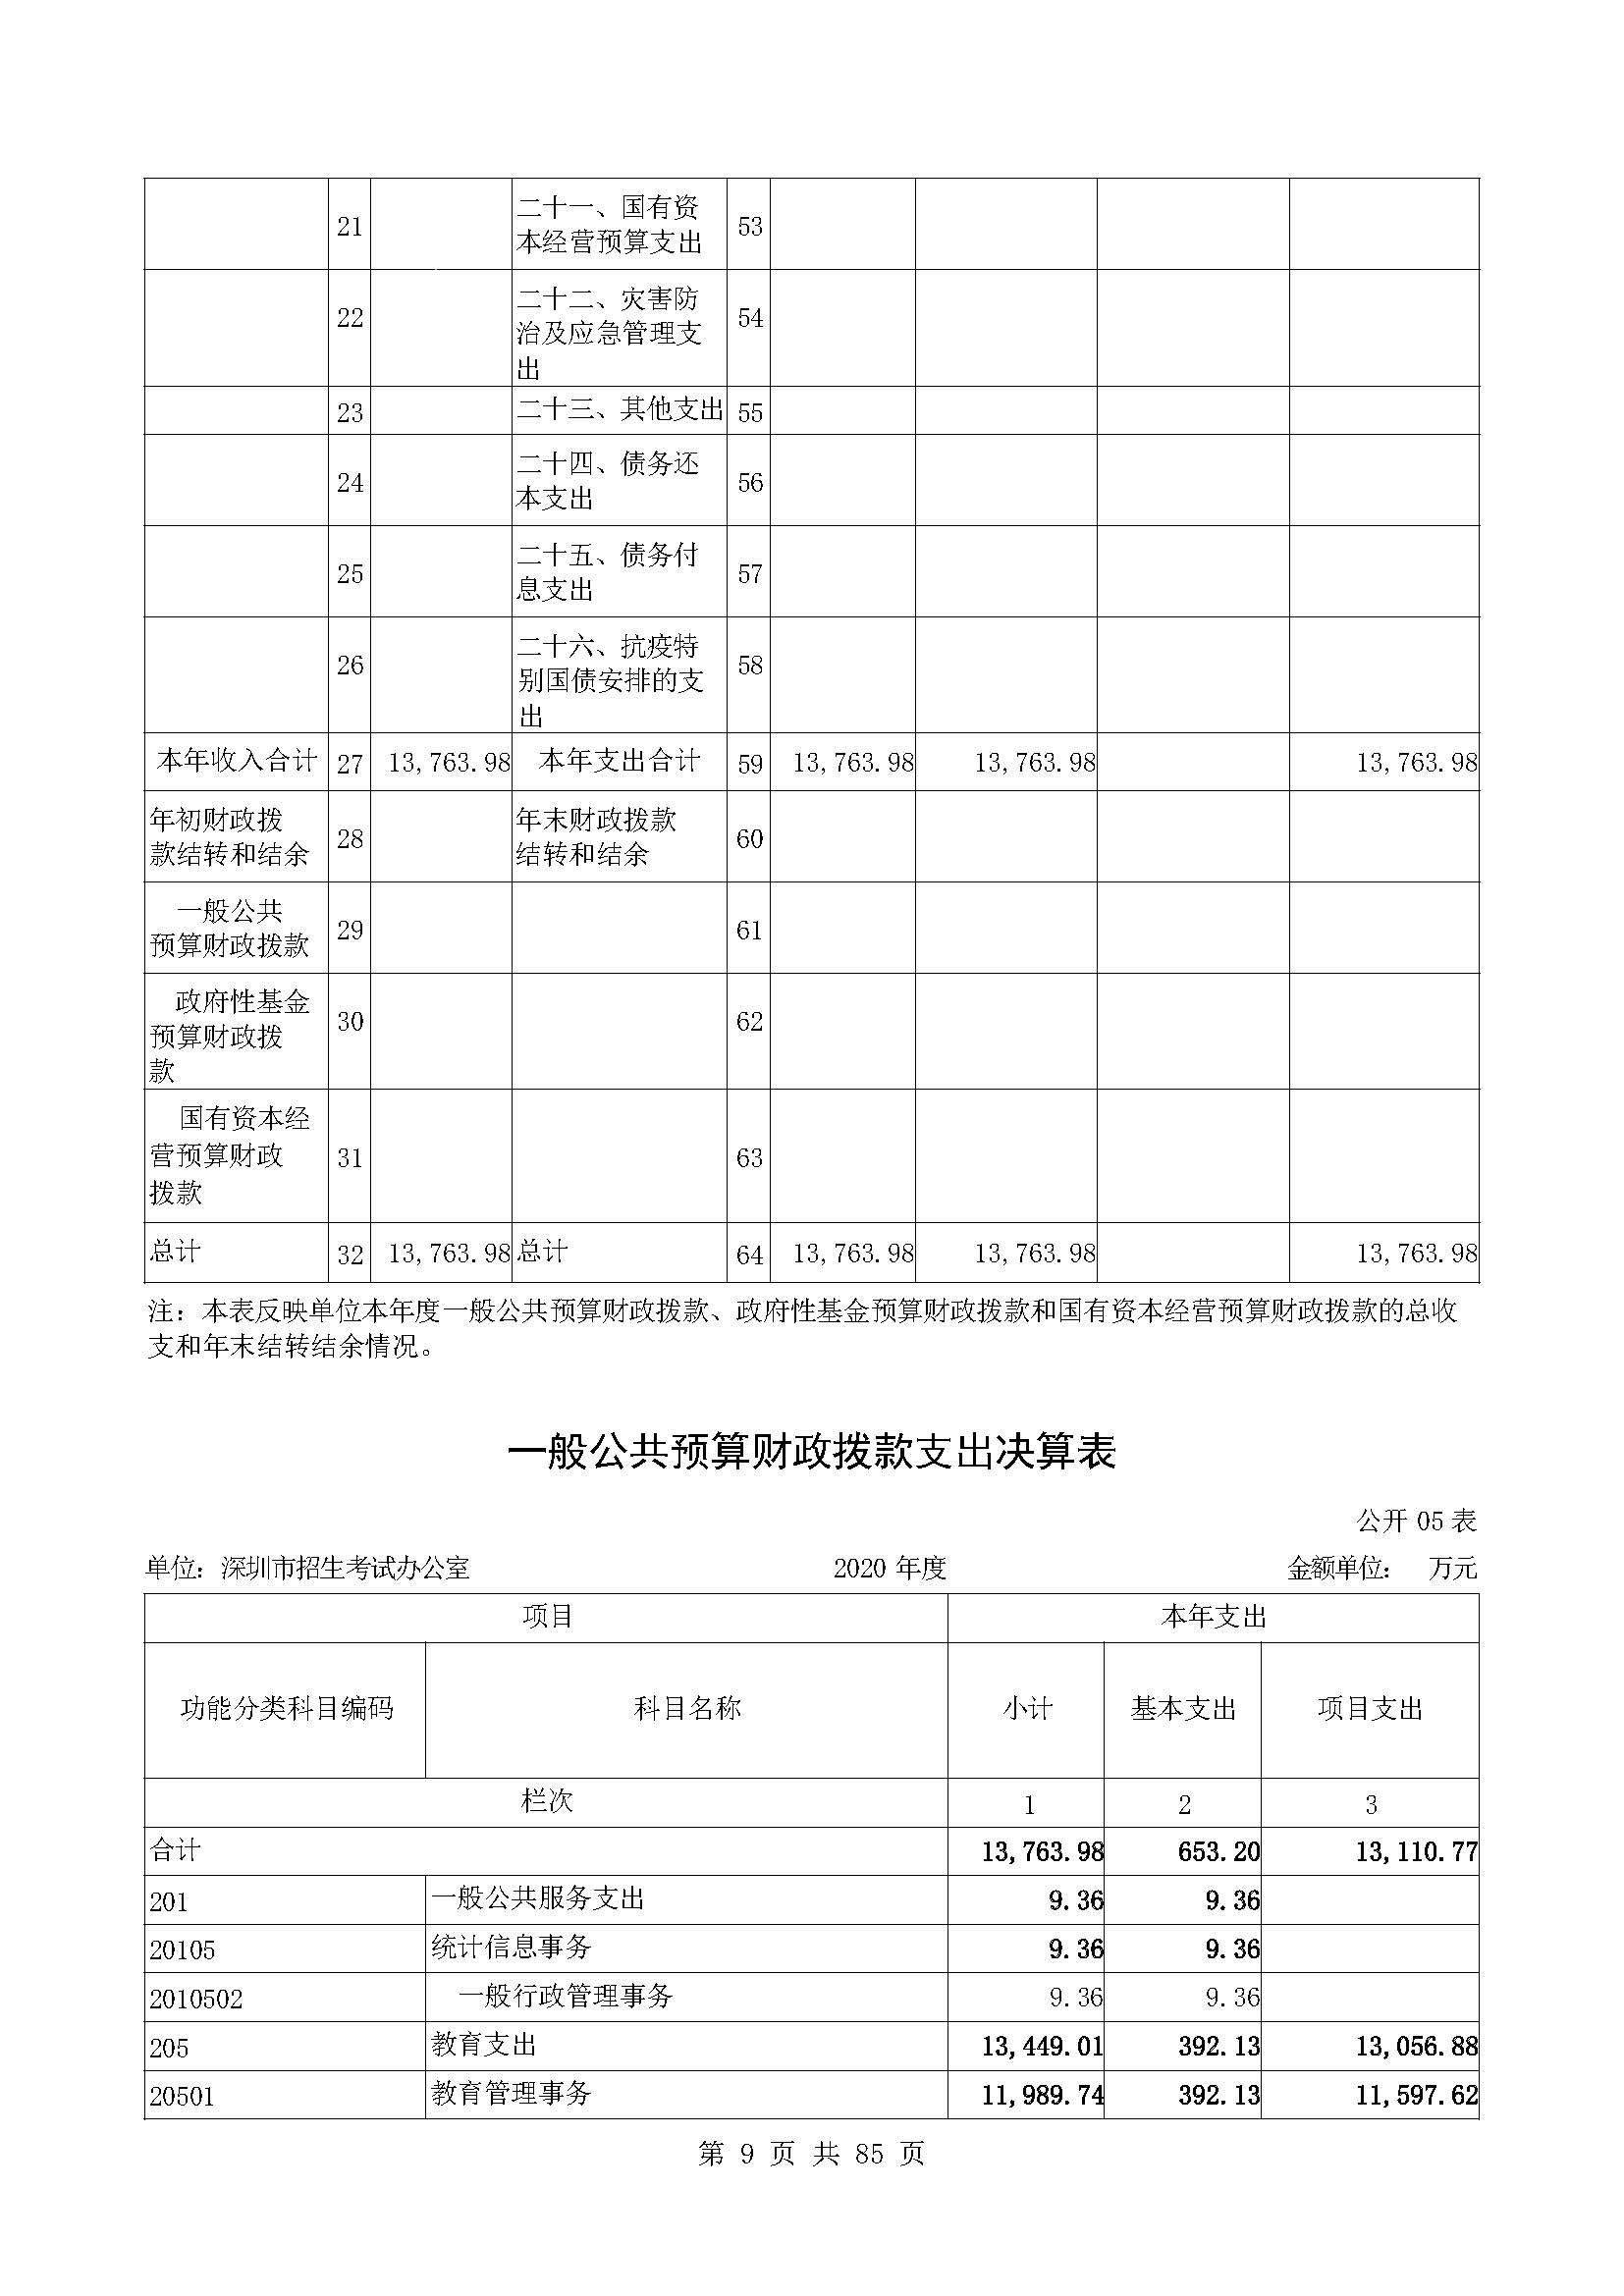 深圳市招生考试办公室2020年度部门决算_页面_10.jpg